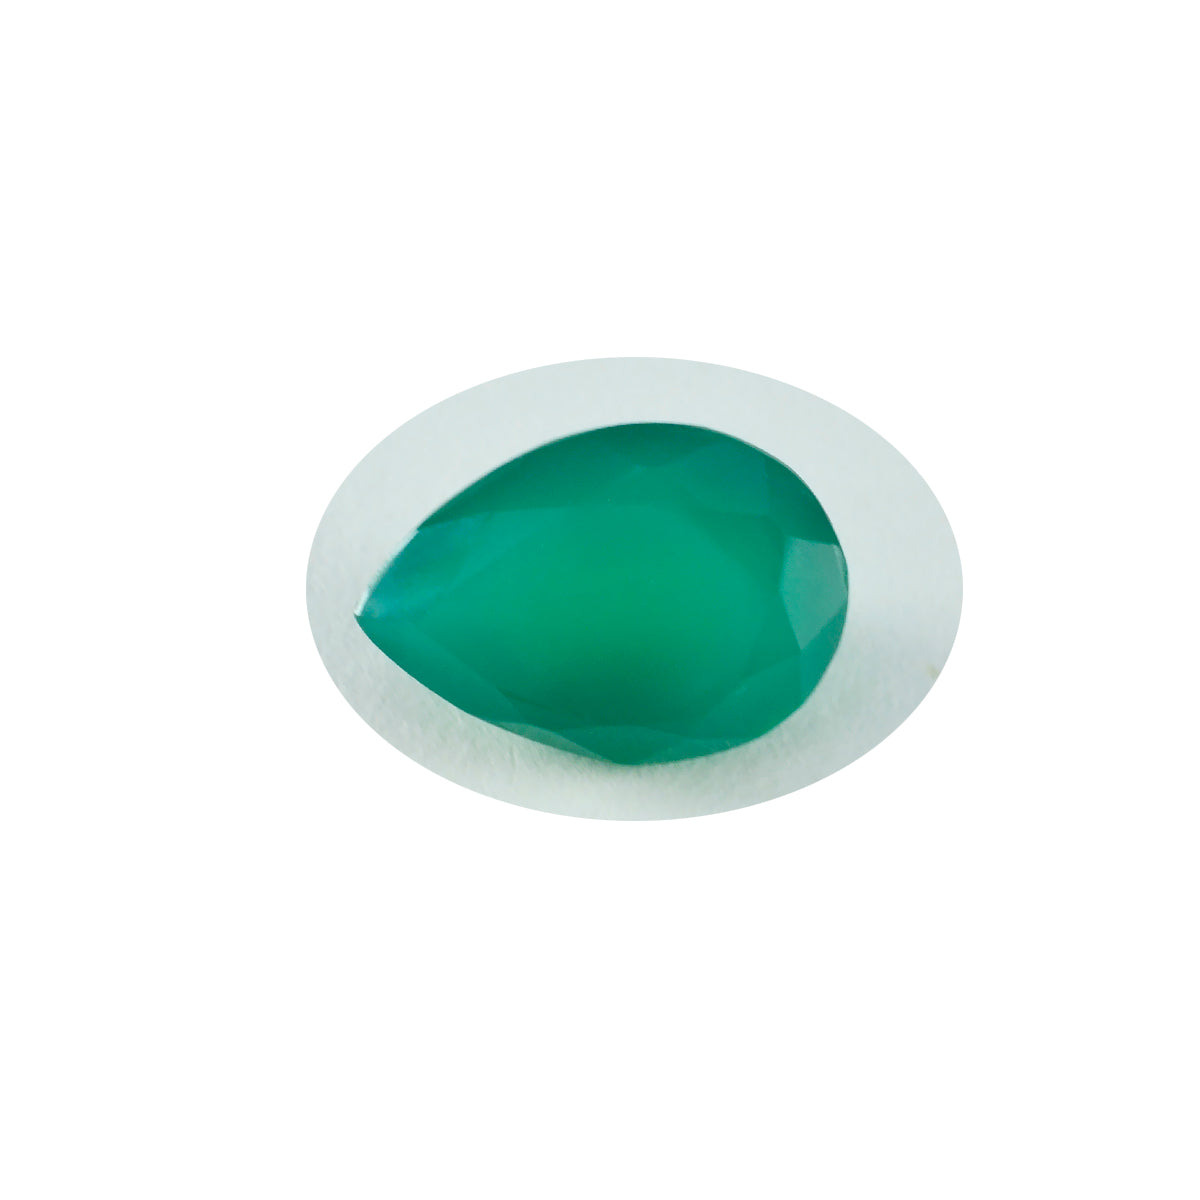 riyogems 1pc jaspe vert naturel à facettes 12x16 mm forme de poire a1 qualité pierre précieuse en vrac